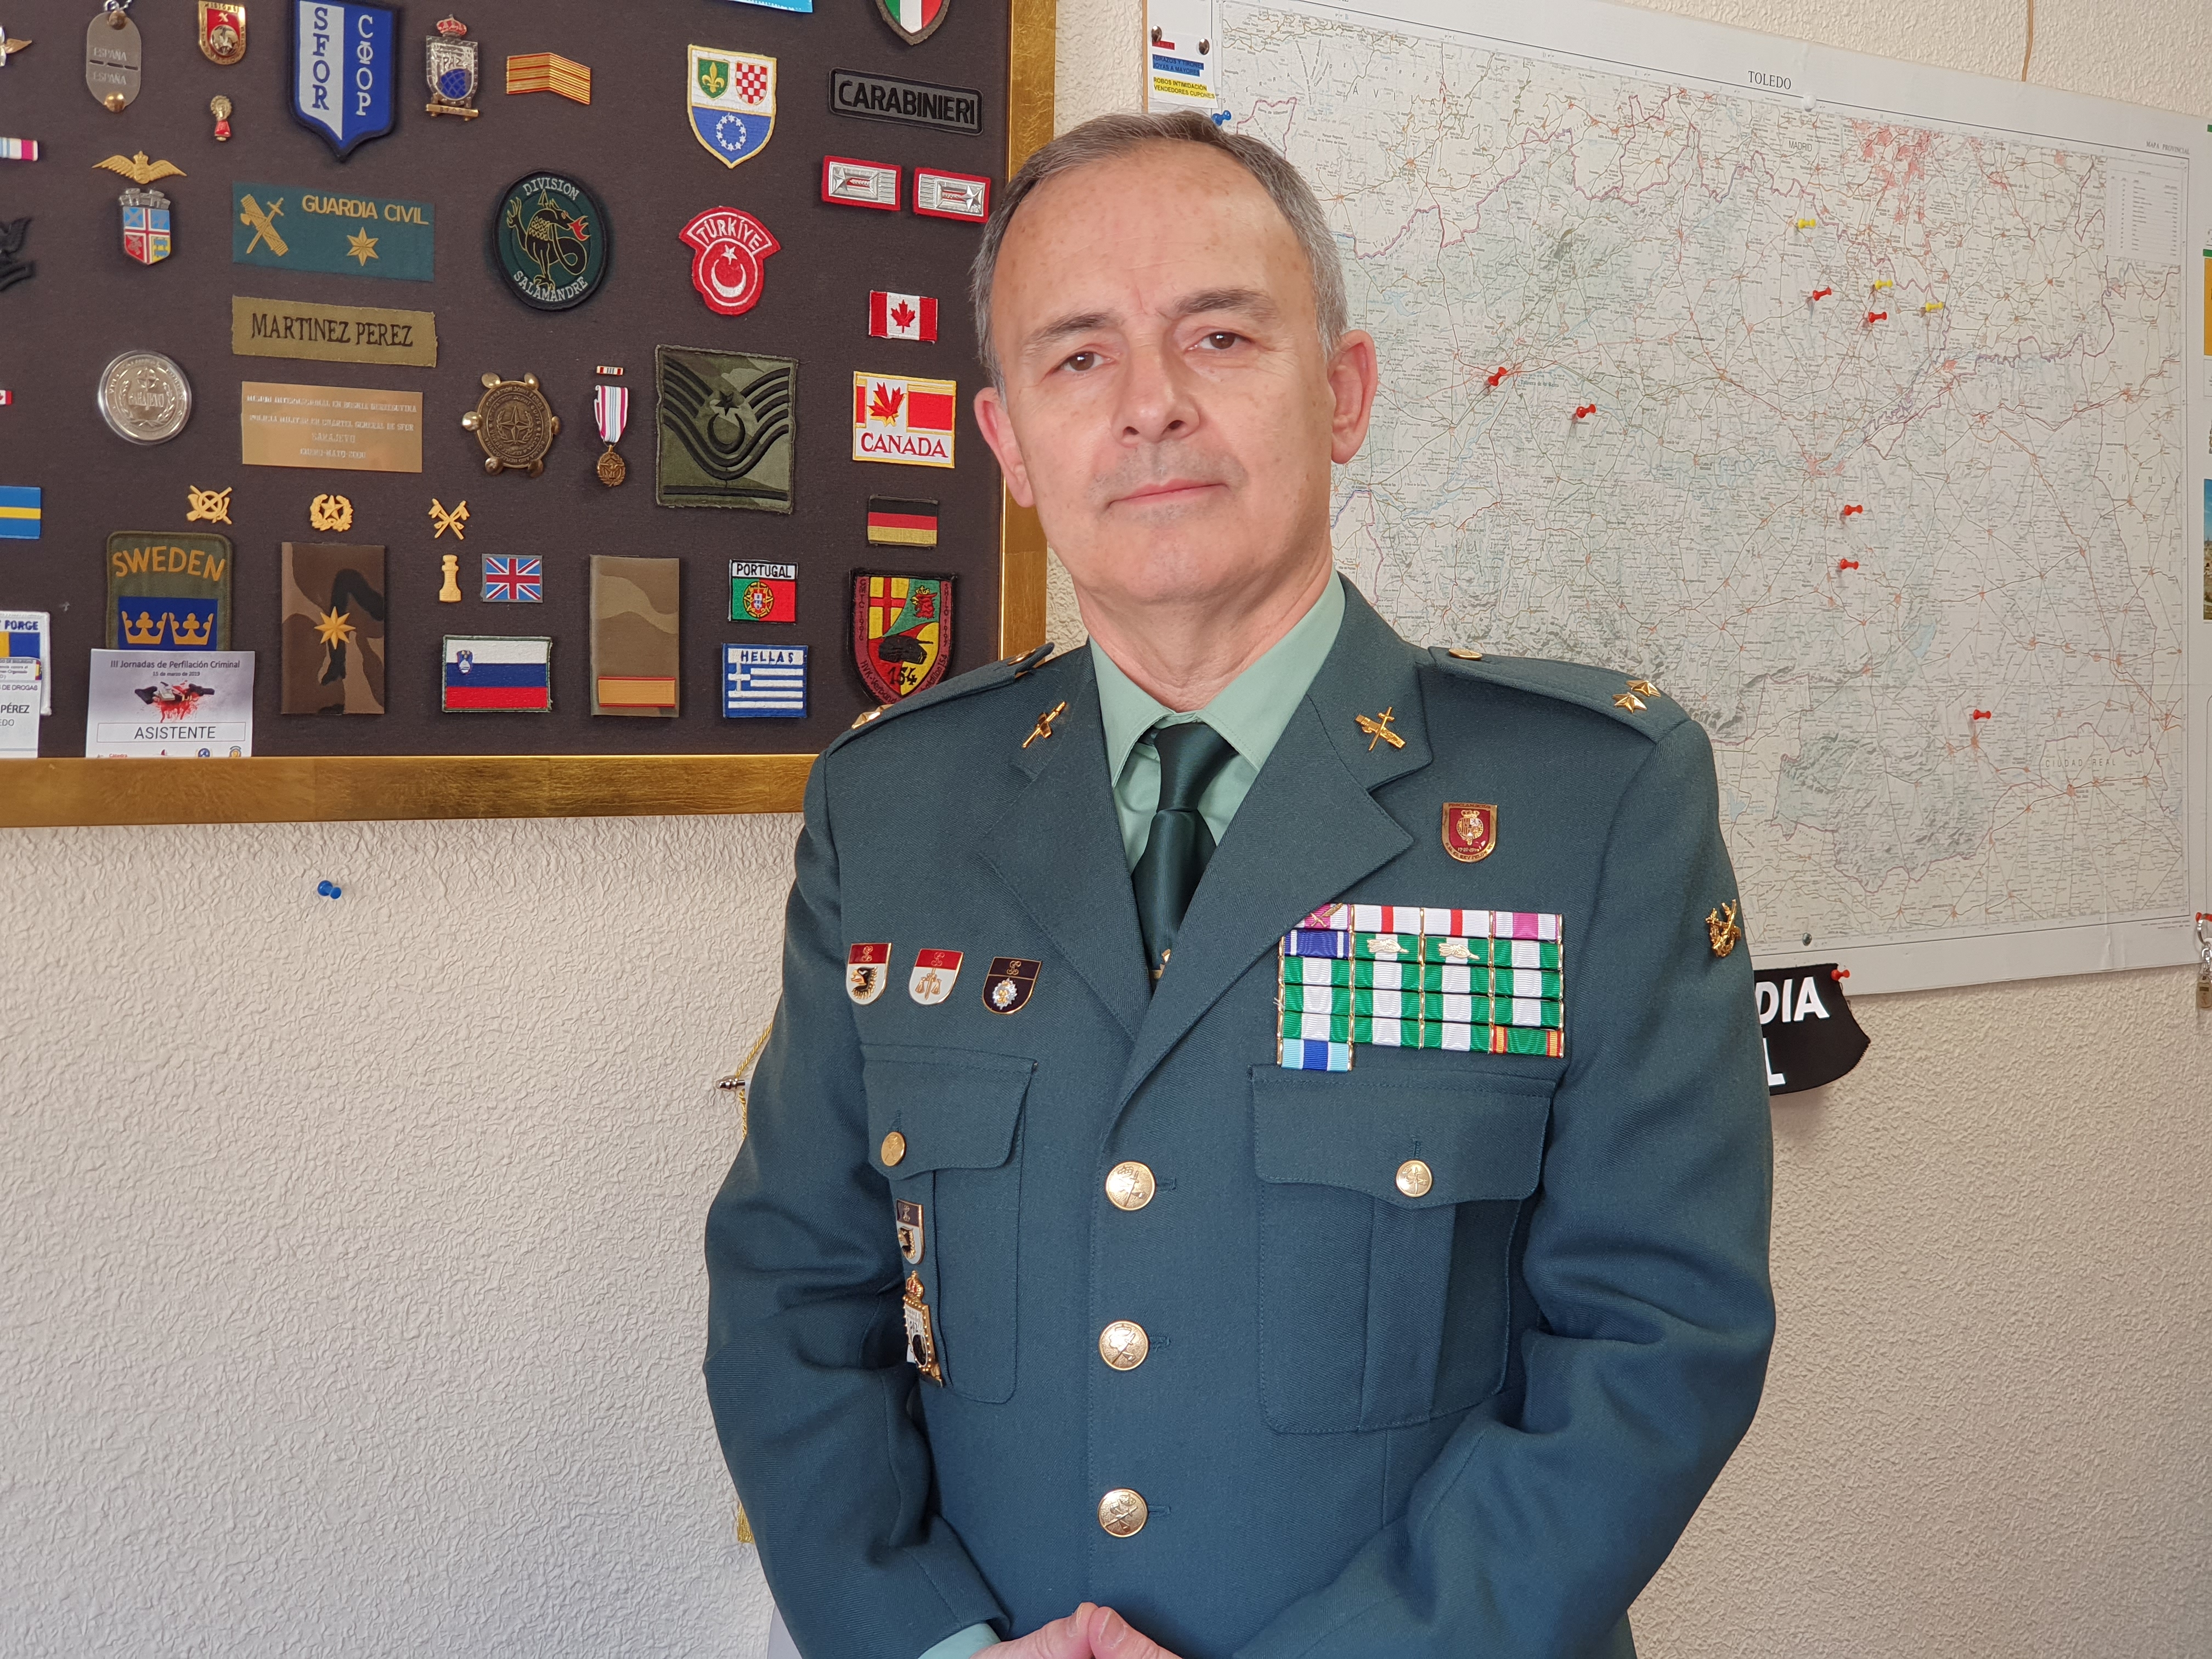 Martínez, teniente de la Guardia Civil: "España es el productor de marihuana de Europa" - Valle de Elda